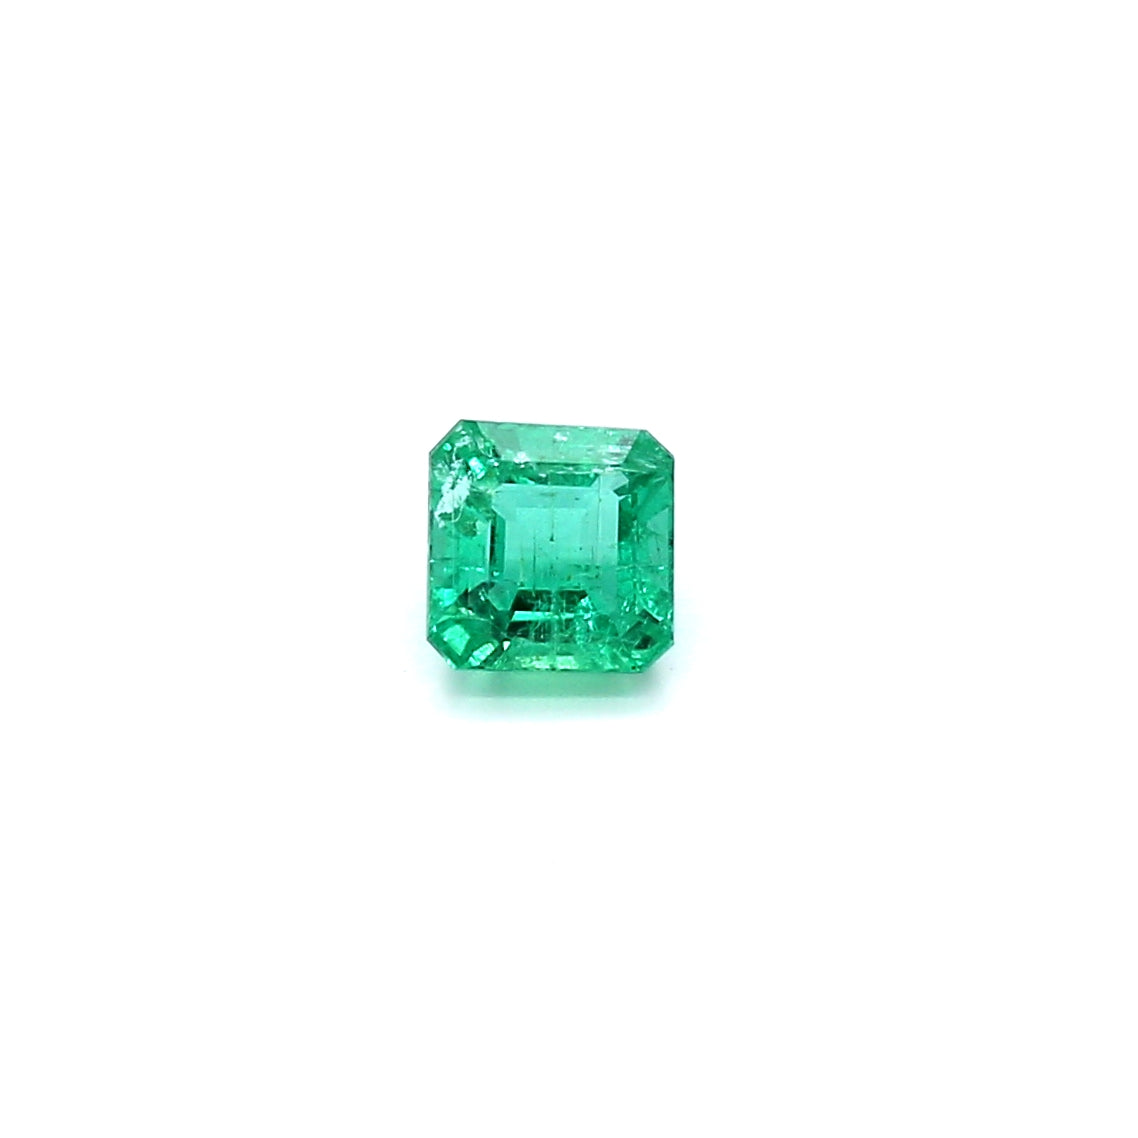 0.43ct Octagon Emerald, Minor Oil, Zambia - 4.35 x 4.29 x 3.01mm